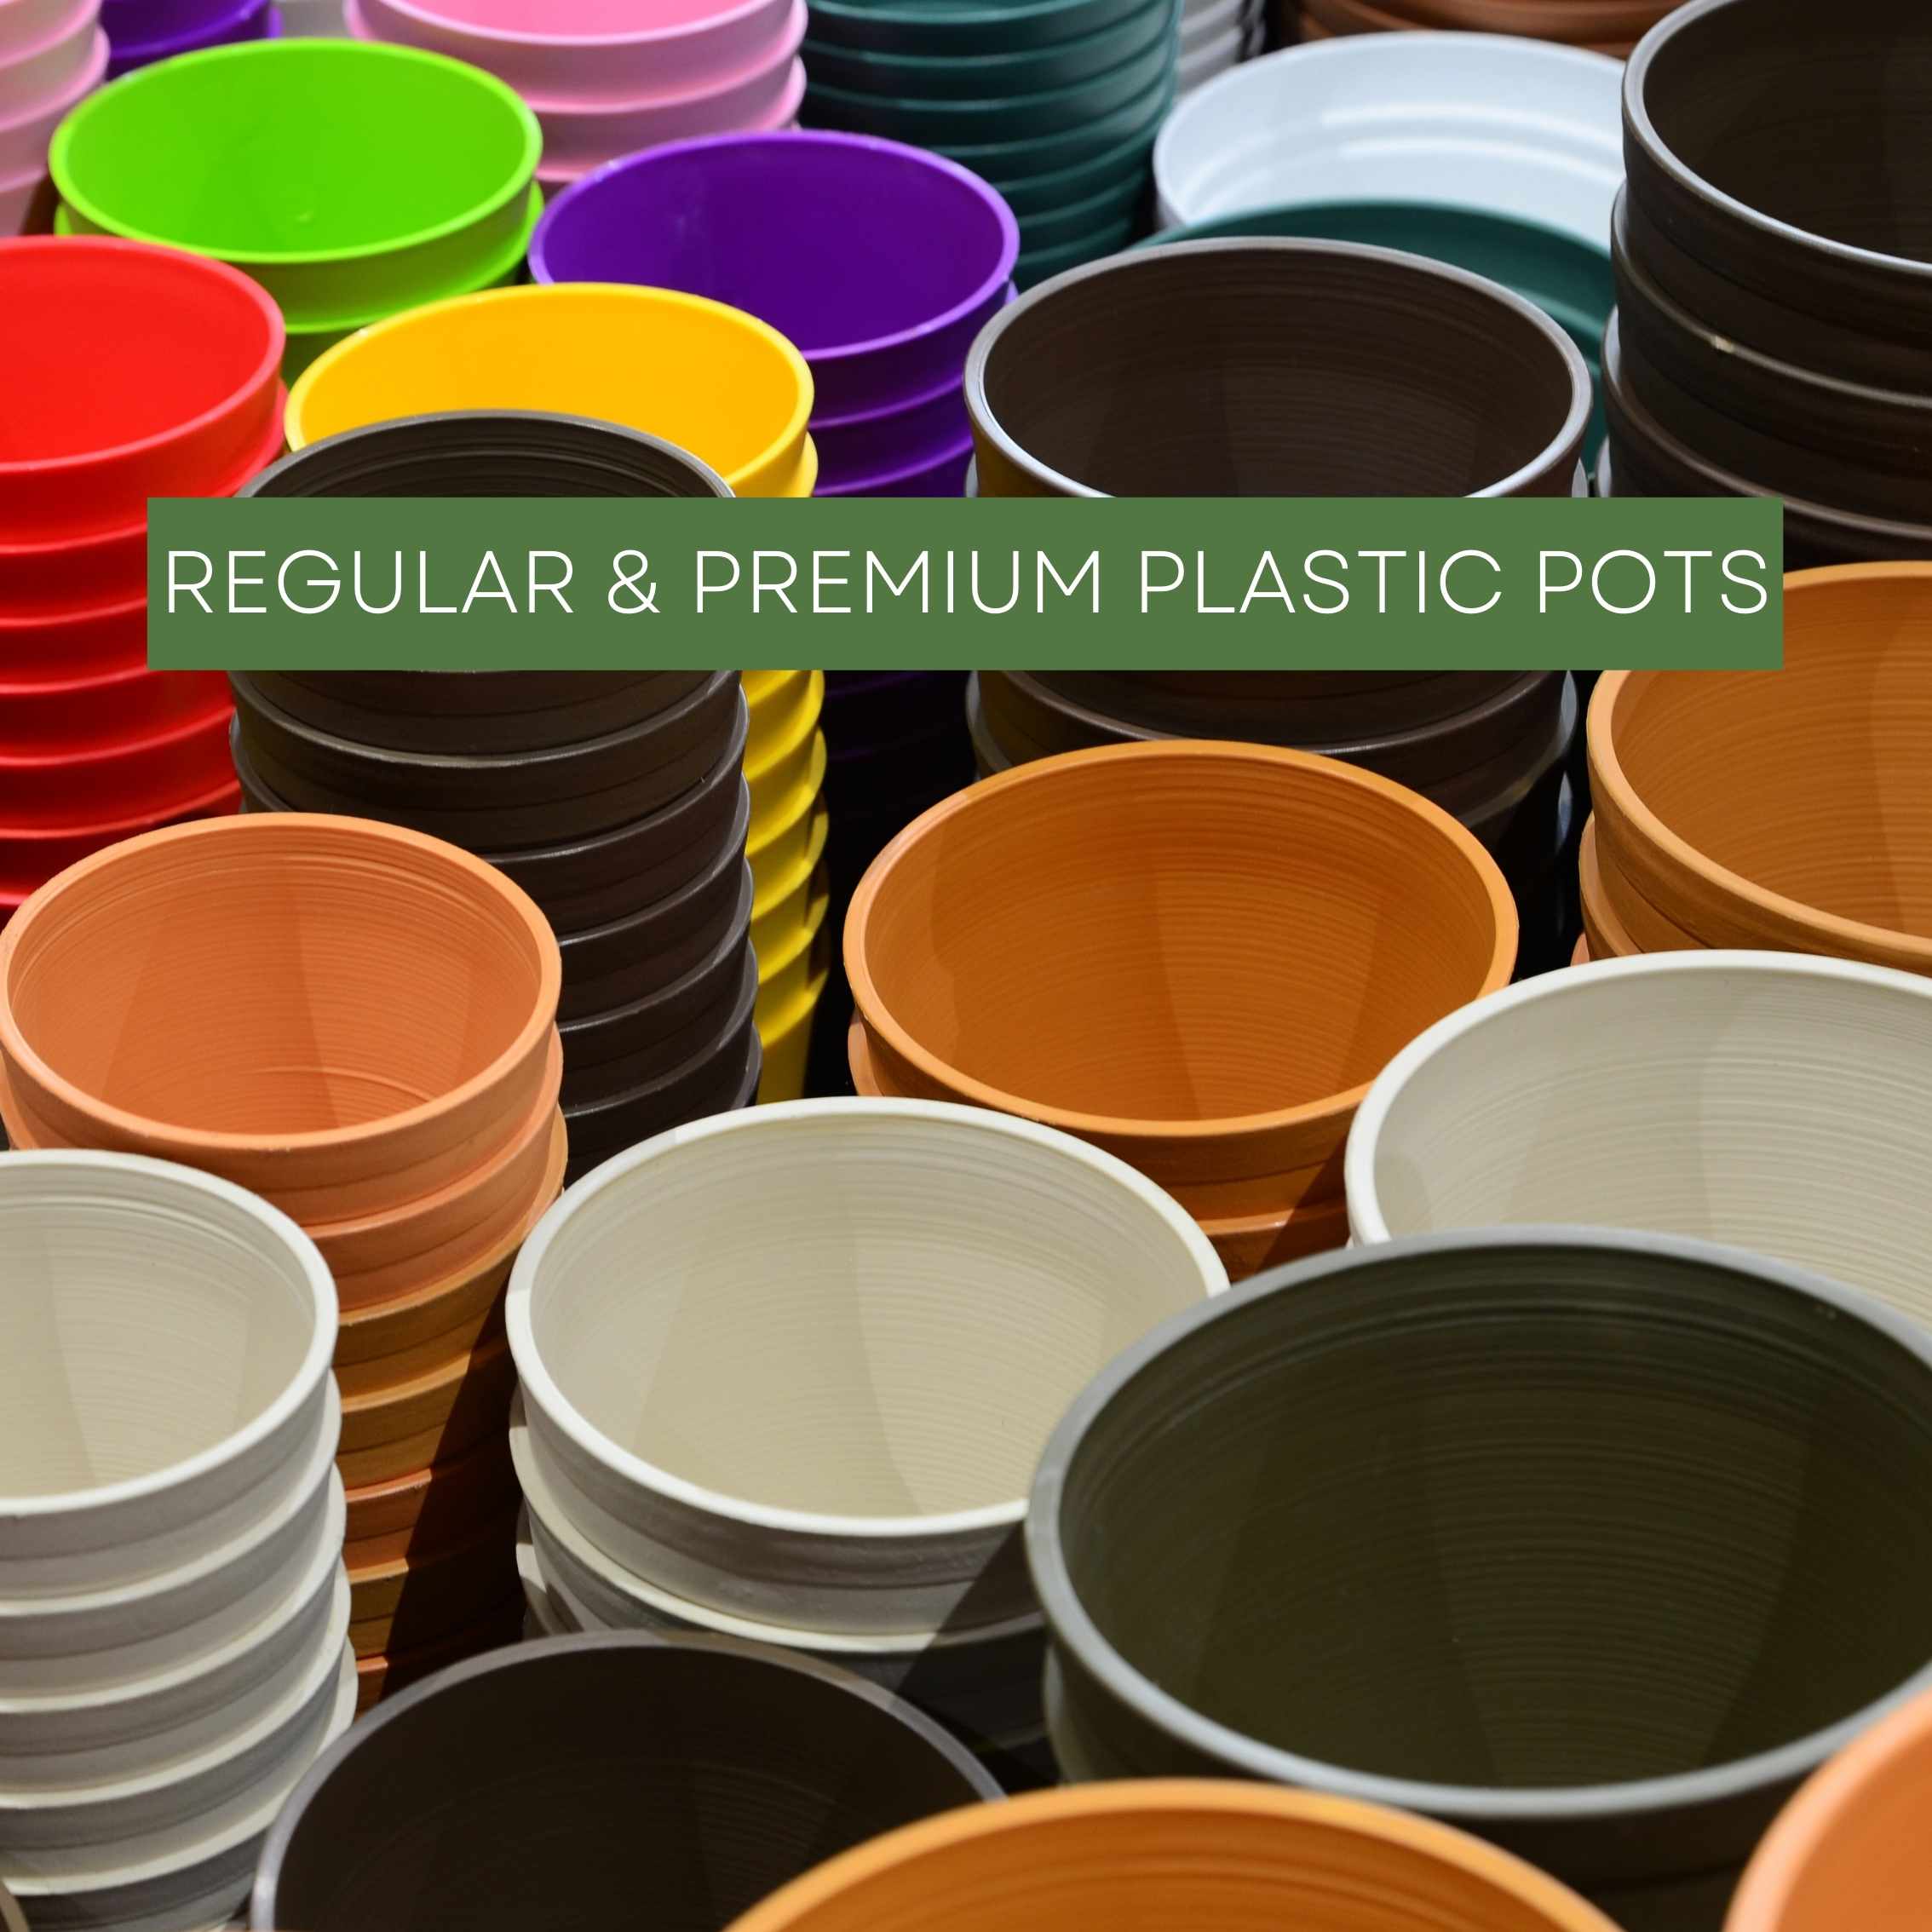 Premium Plastic Pots